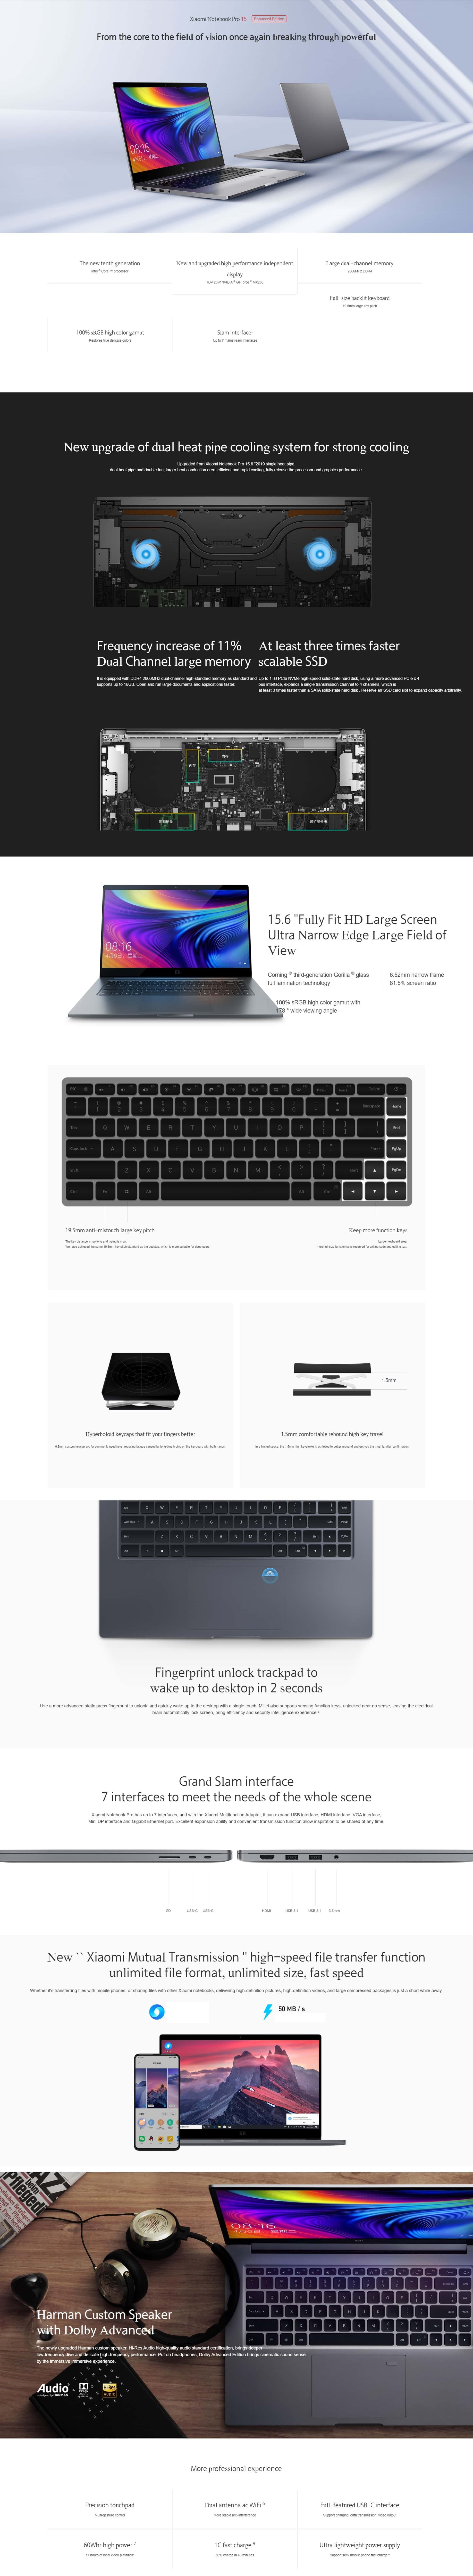 Prezentare-Xiaomi-Millet-Notebook-Pro-Enhanced7d84681ad1ee6ab8.jpg